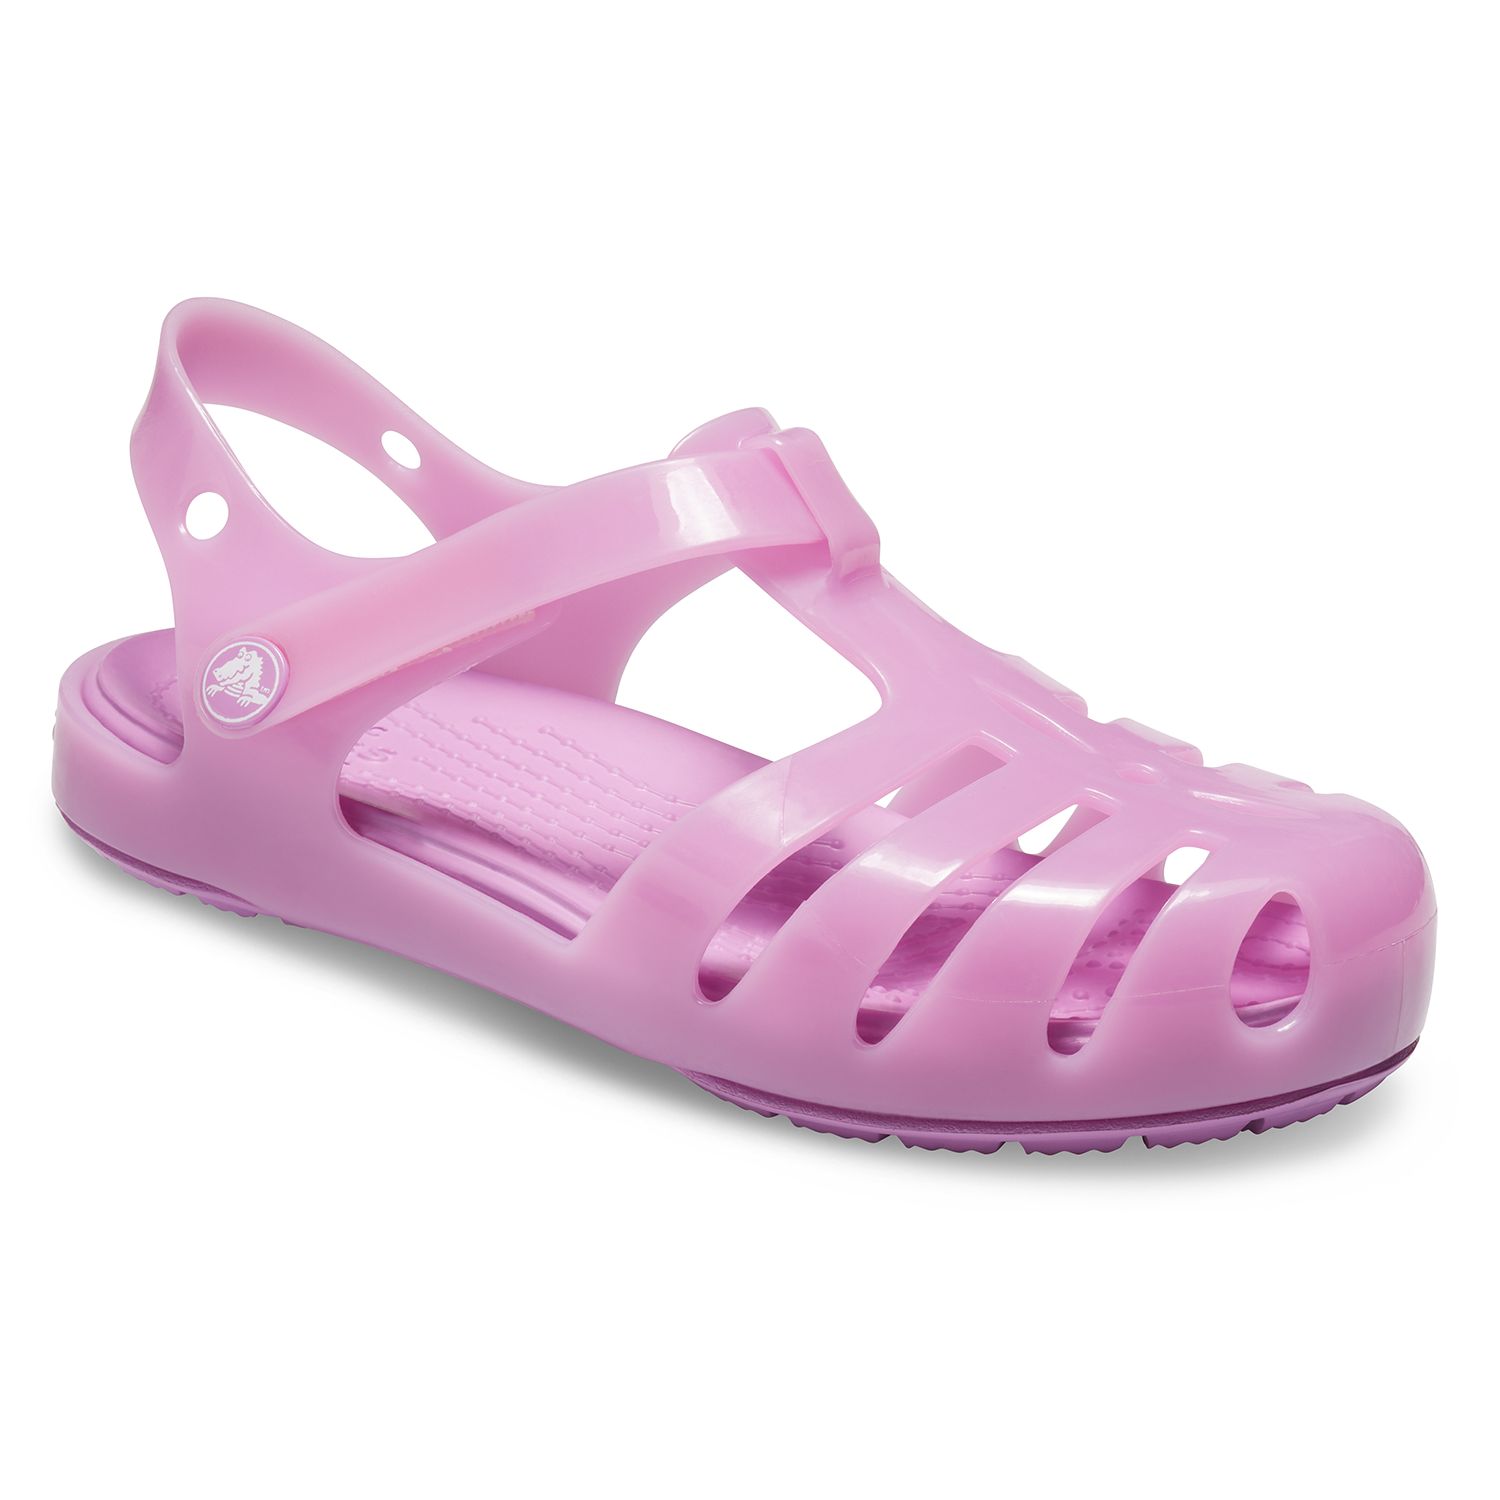 isabella sandals crocs